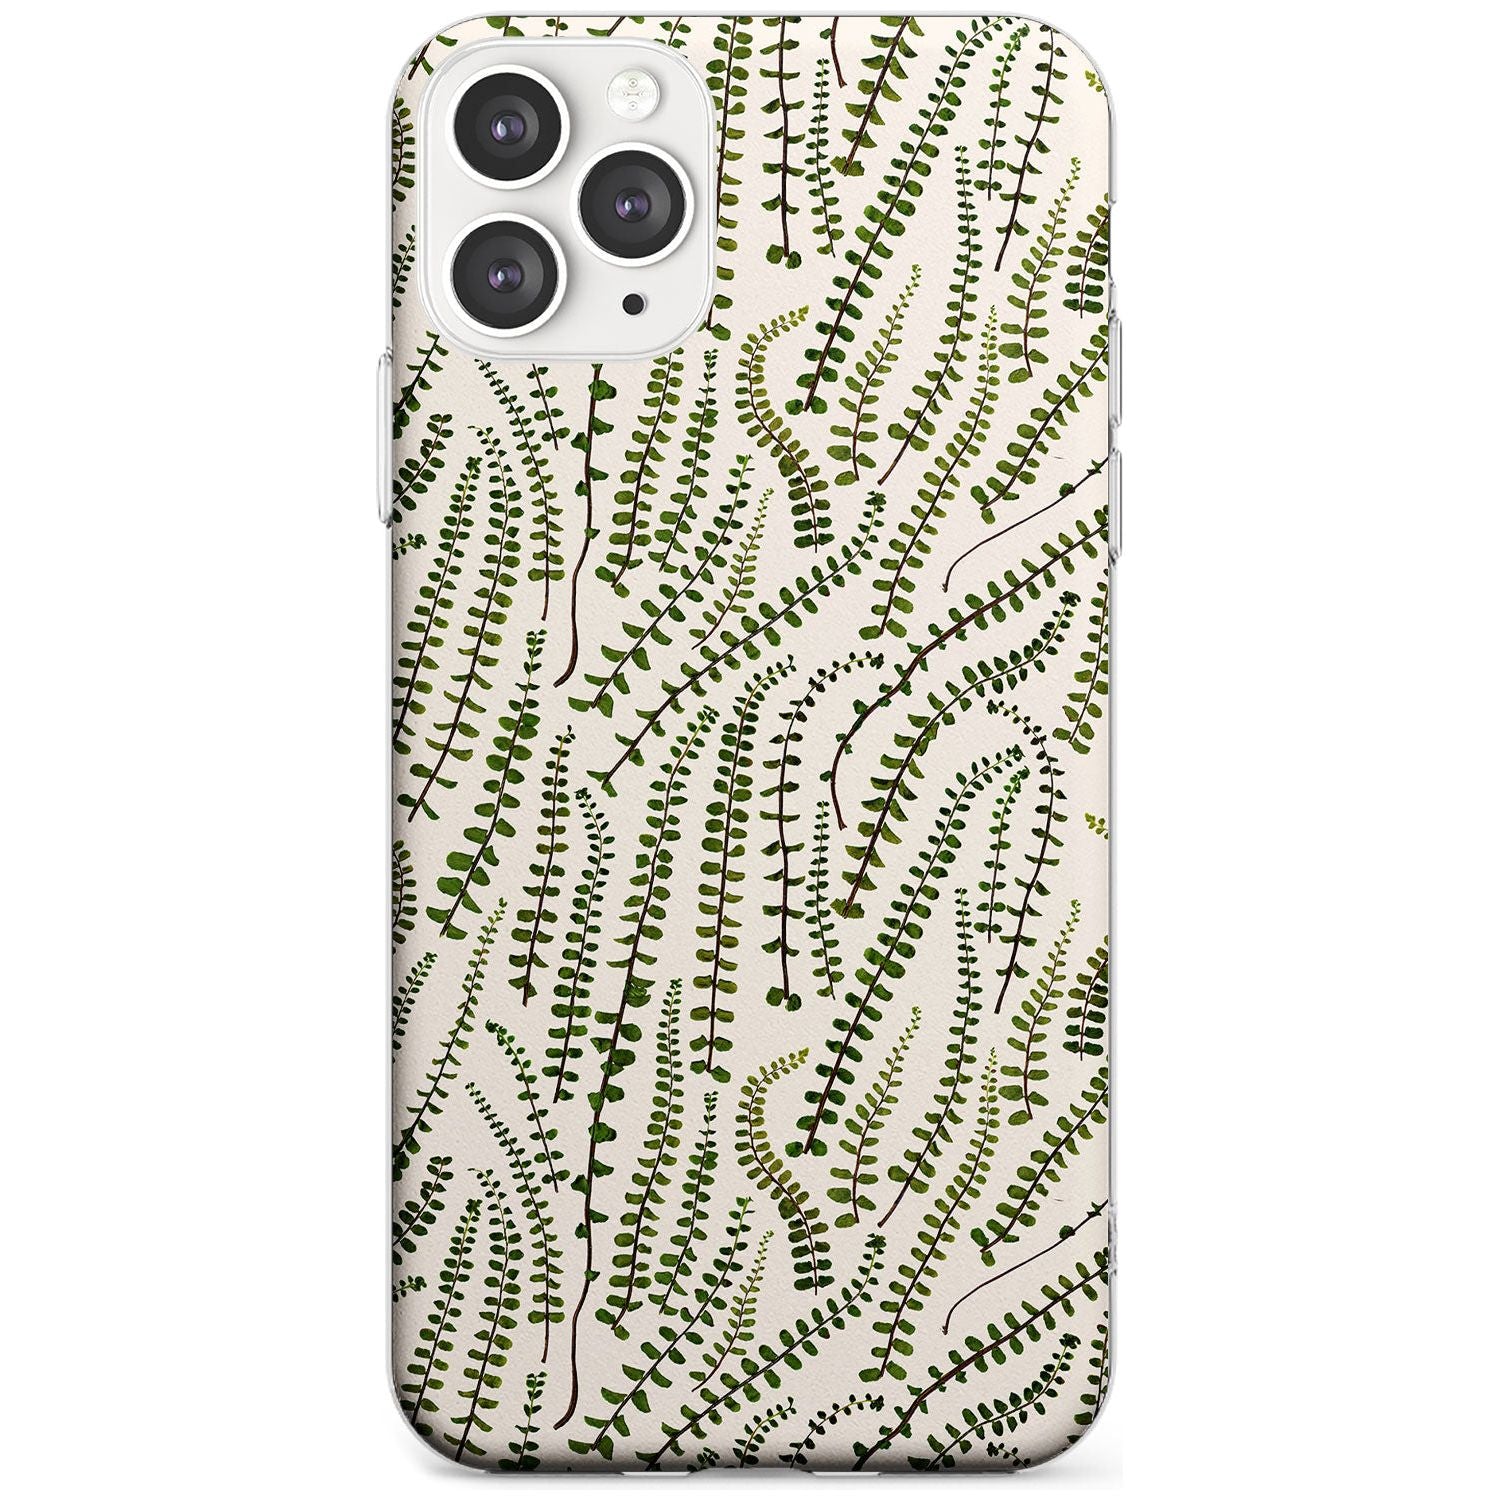 Fern Leaf Pattern Design - Cream Slim TPU Phone Case for iPhone 11 Pro Max